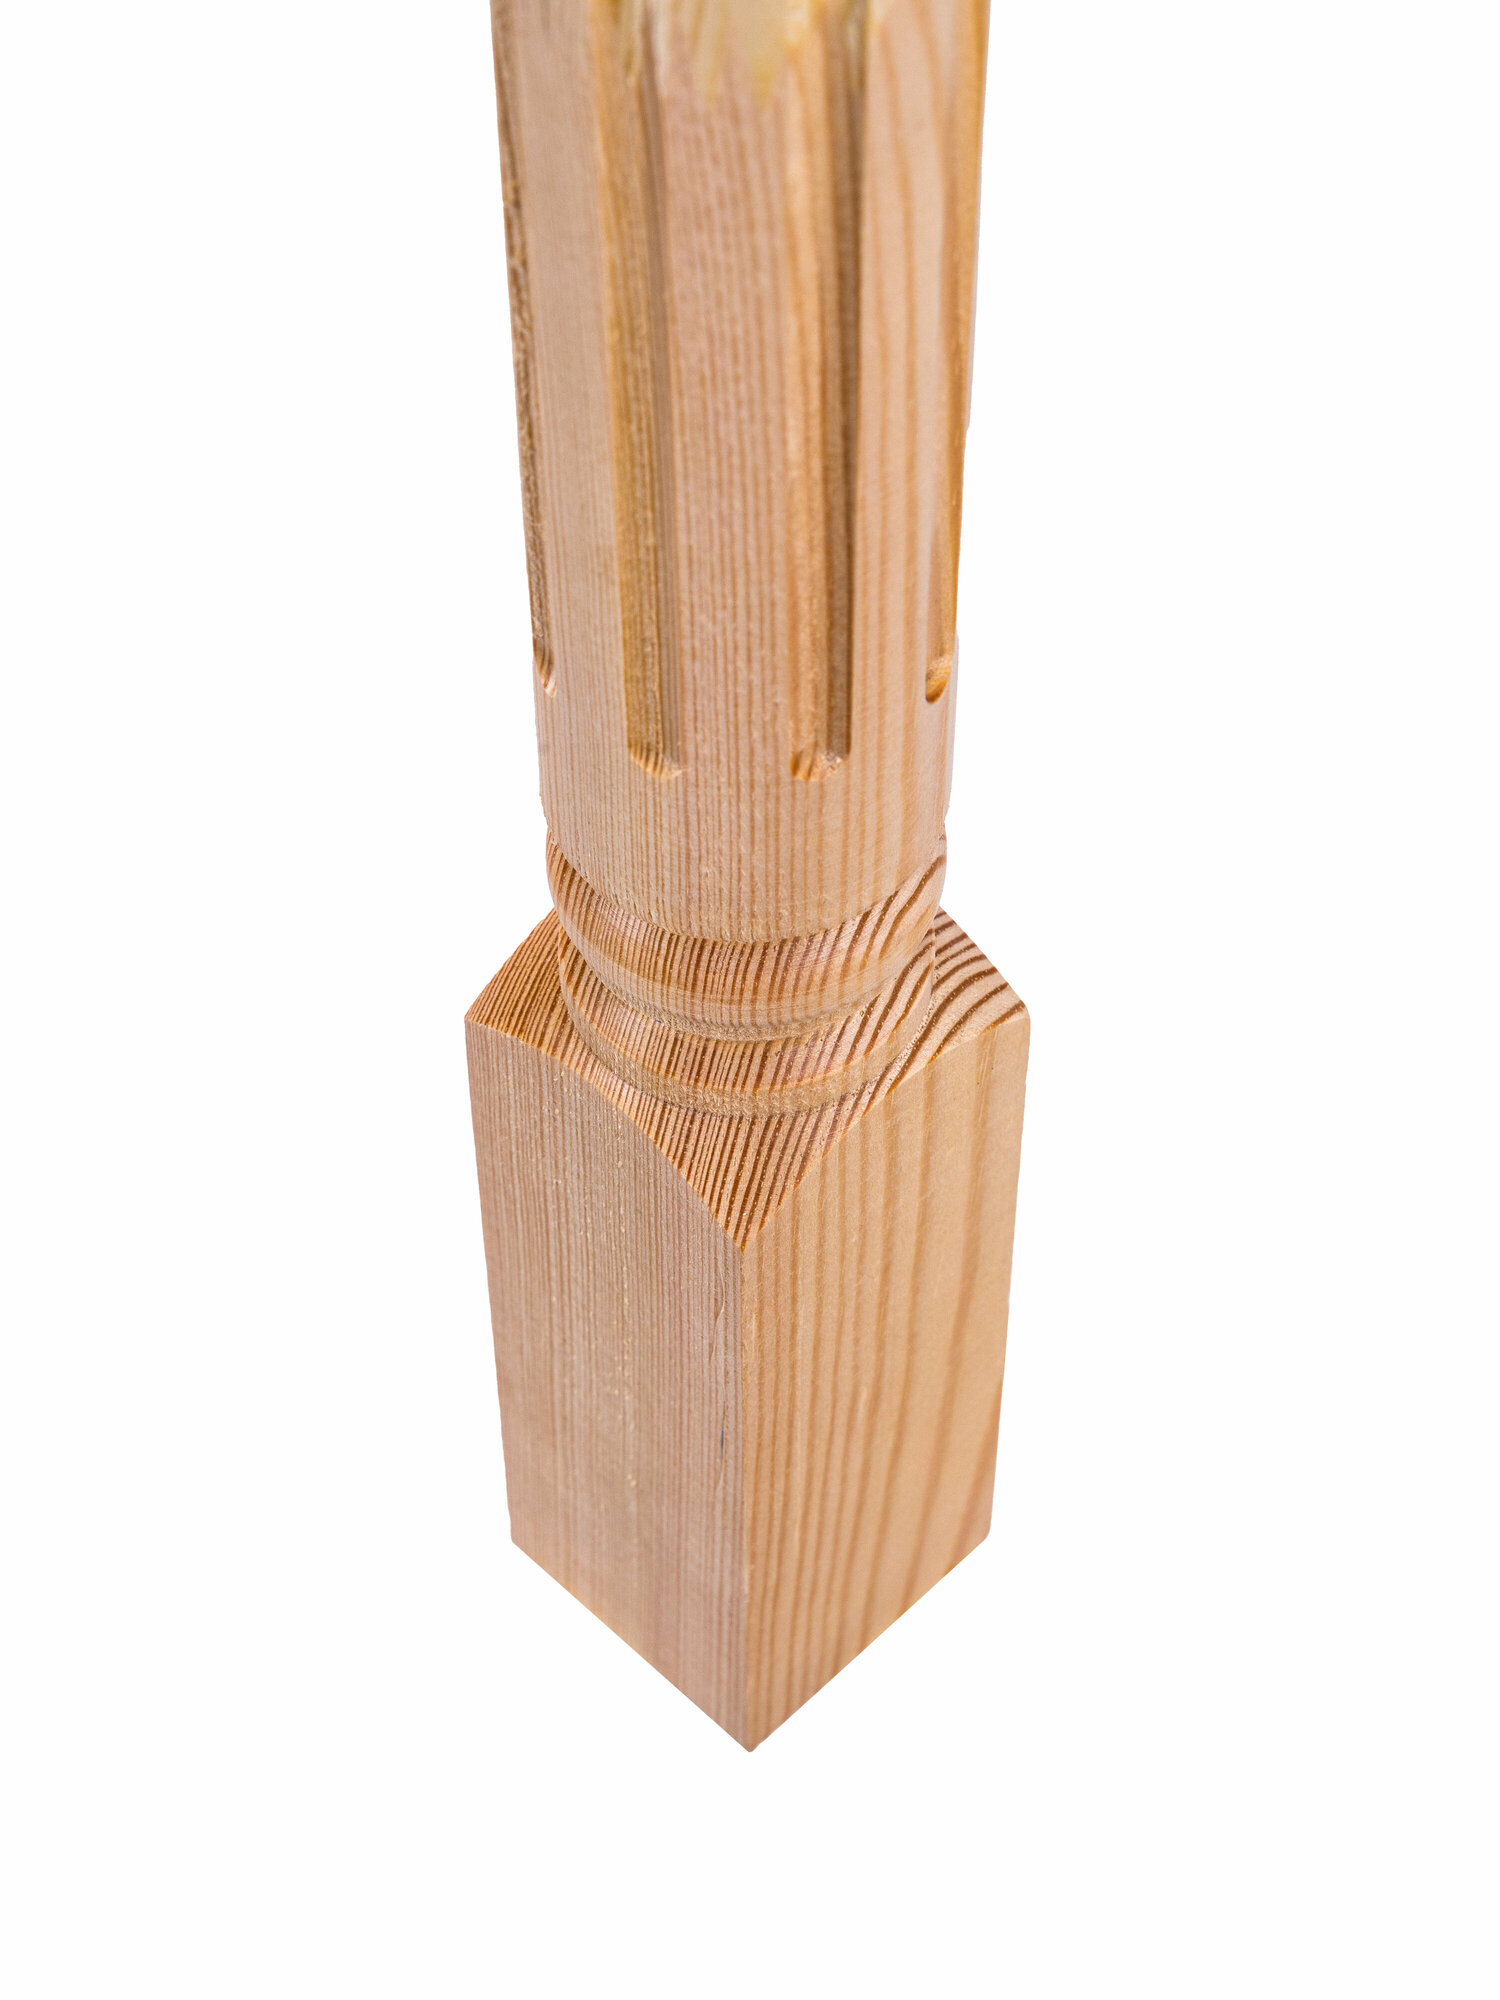 Набор 4 балясины деревянные 900х50х50мм / сращенная без сучков / лестничное ограждение балюстрада из сосны премиум АА модель 50/Р1